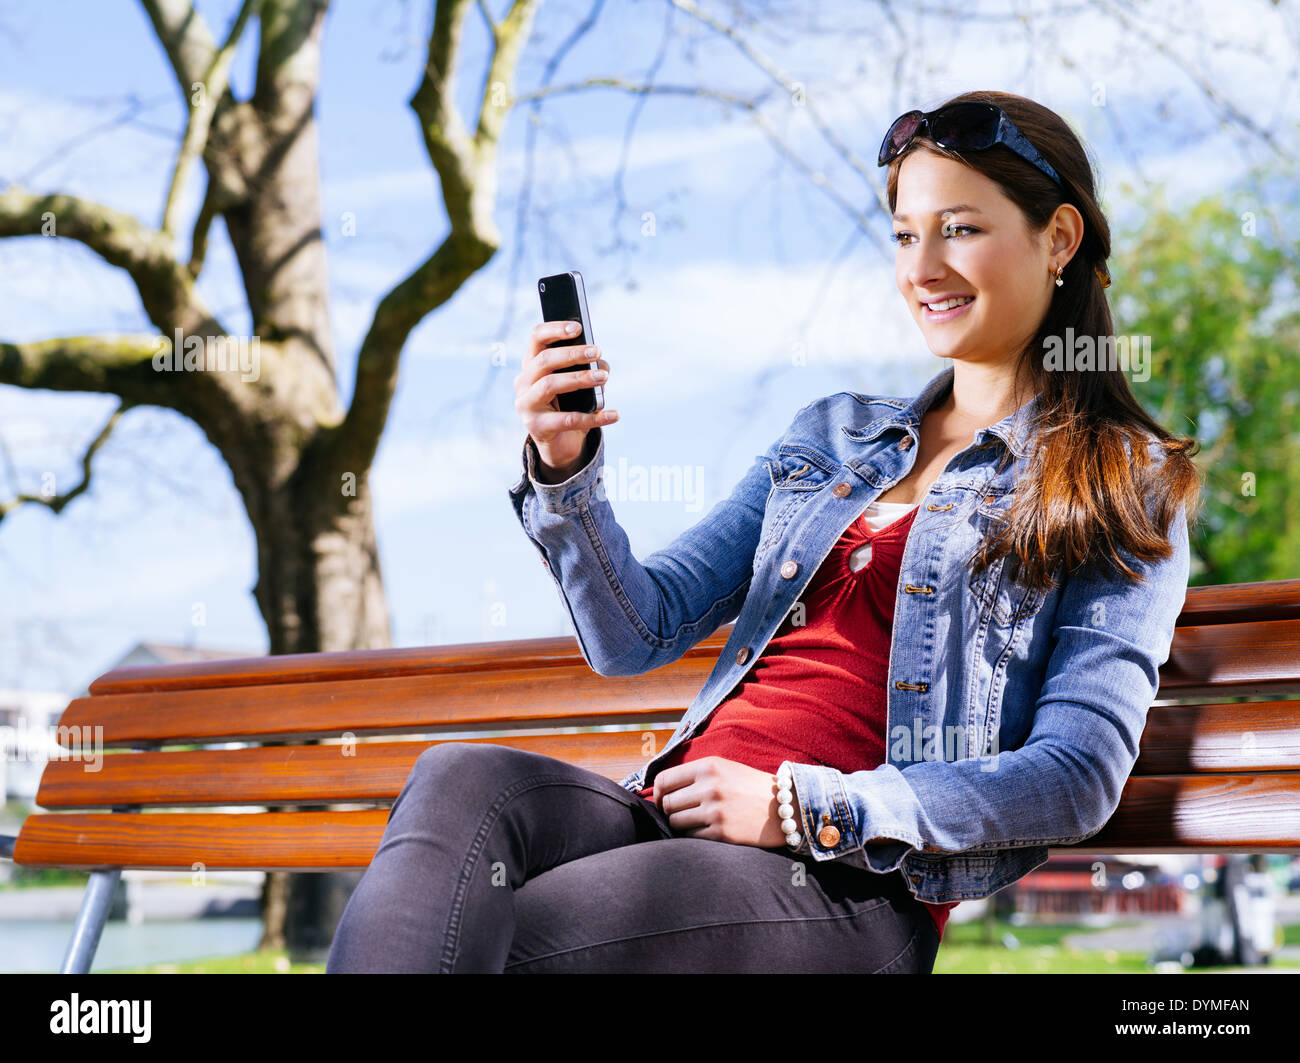 Foto von einer schönen jungen Frau, die mit einem Smartphone beim Sitzen auf einer Parkbank. Stockfoto